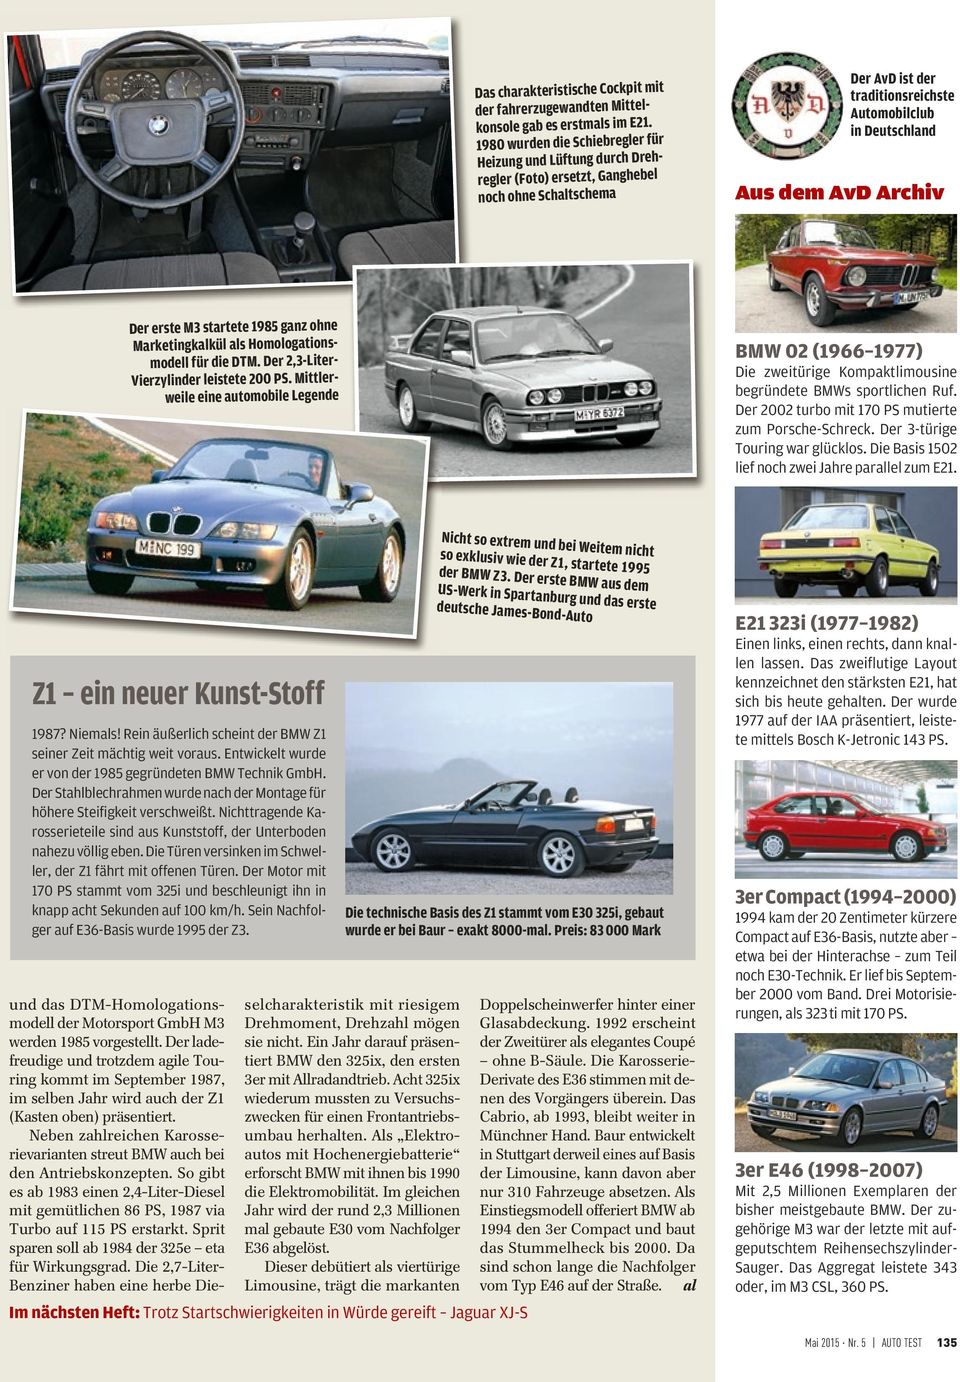 die DTM. Der 2,3-LiterVierzylinder leistete 200 PS. Mittlerweile eine automobile Legende Die zweitürige Kompaktlimousine begründete BMWs sportlichen Ruf.